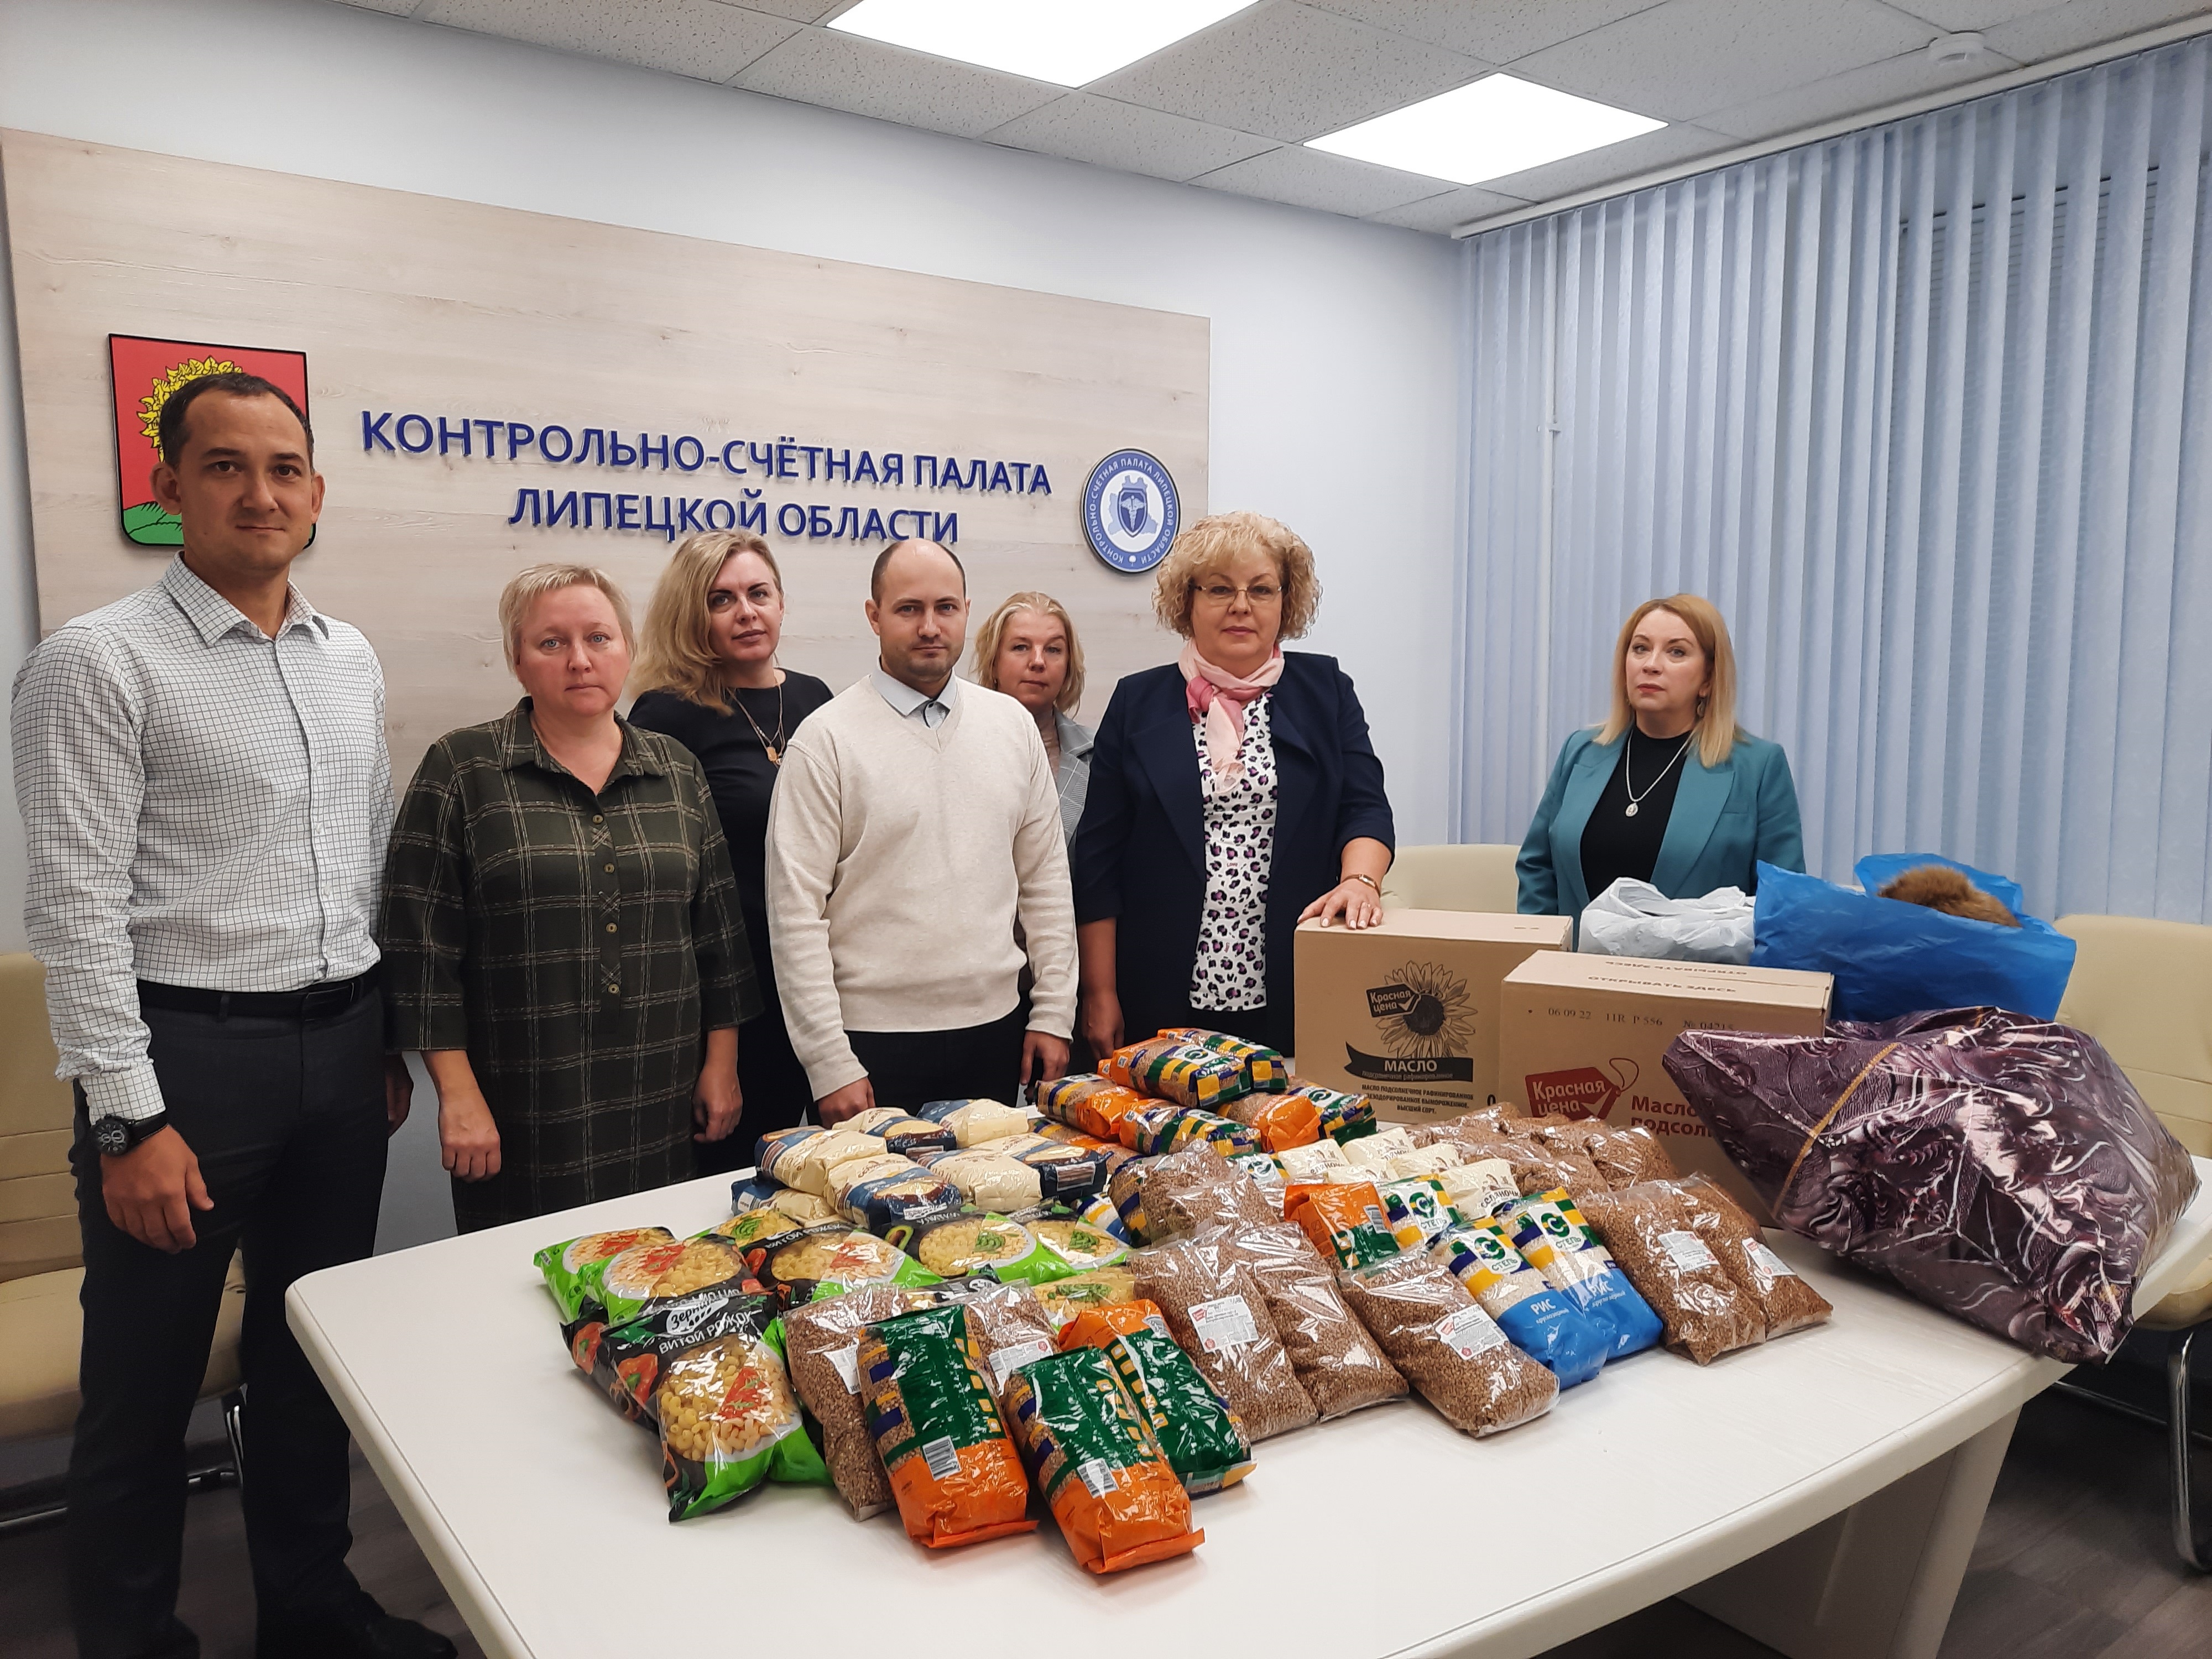 Сотрудники Контрольно-счетной палаты Липецкой области  приняли участие в сборе гуманитарной помощи